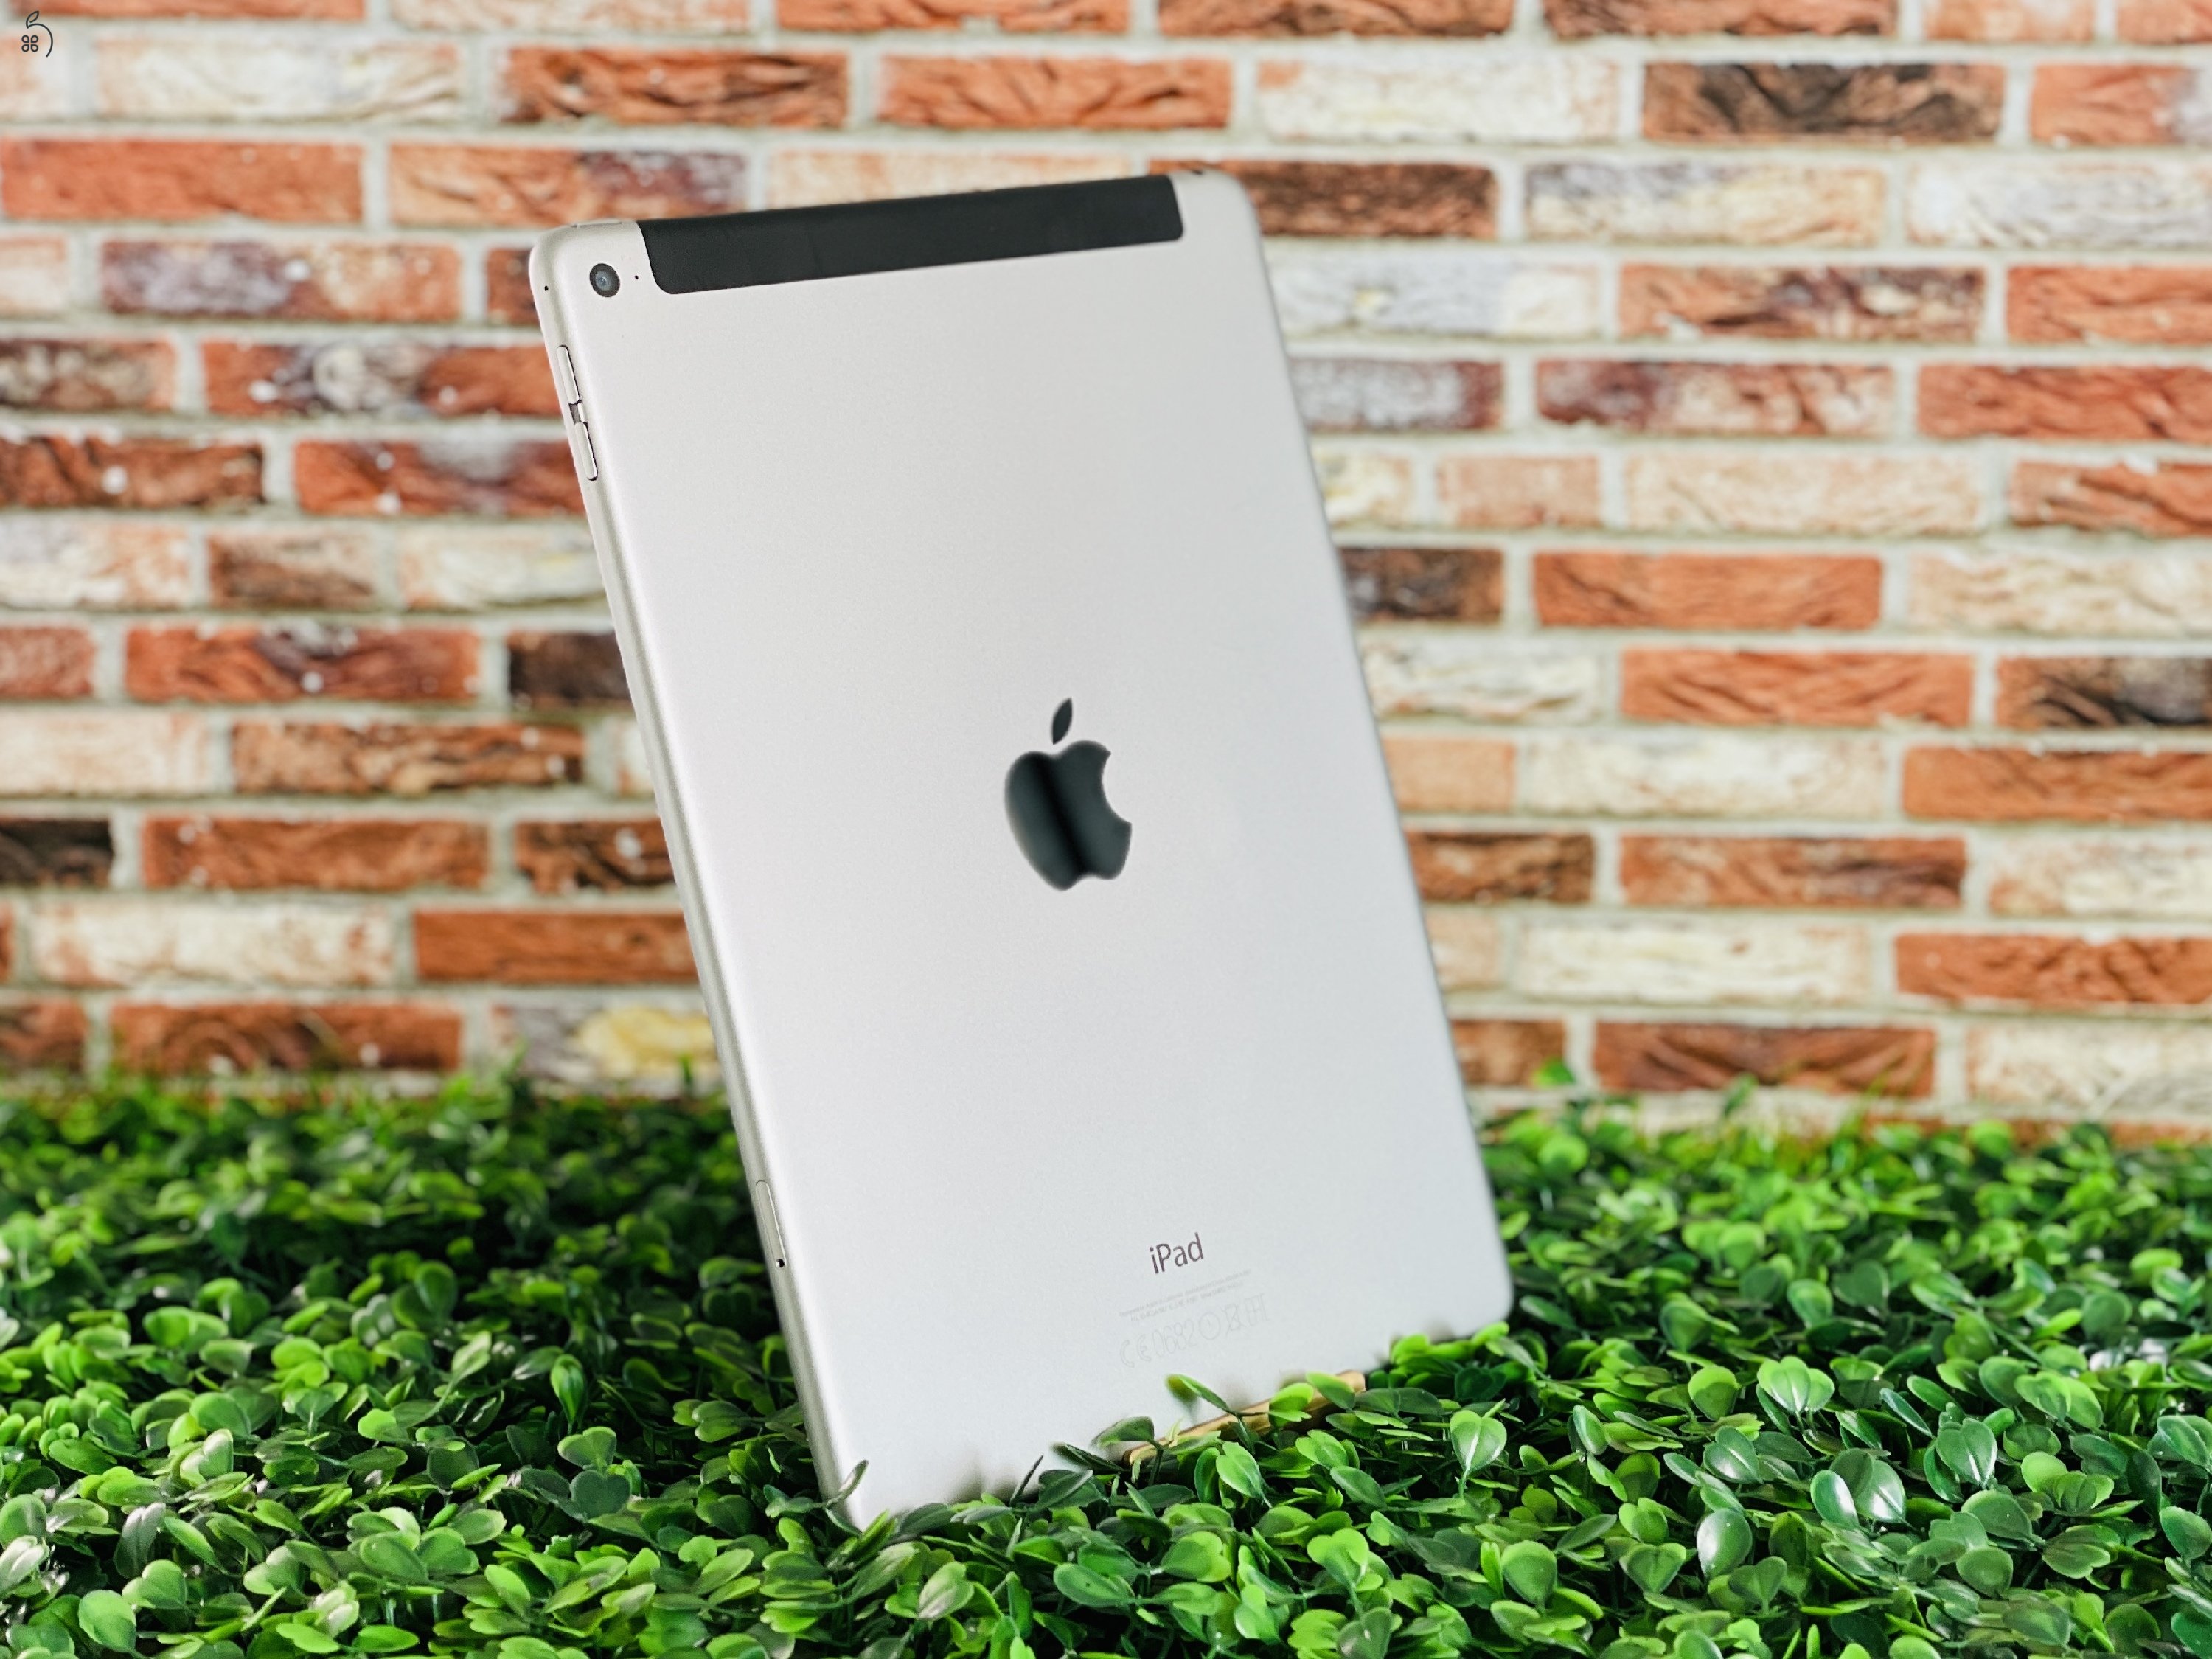 Eladó iPad Air 2th gen 9.7 Wifi +Cellular A1567 64 GB Space Gray szép állapotú - 12 HÓ GARANCIA - 7175